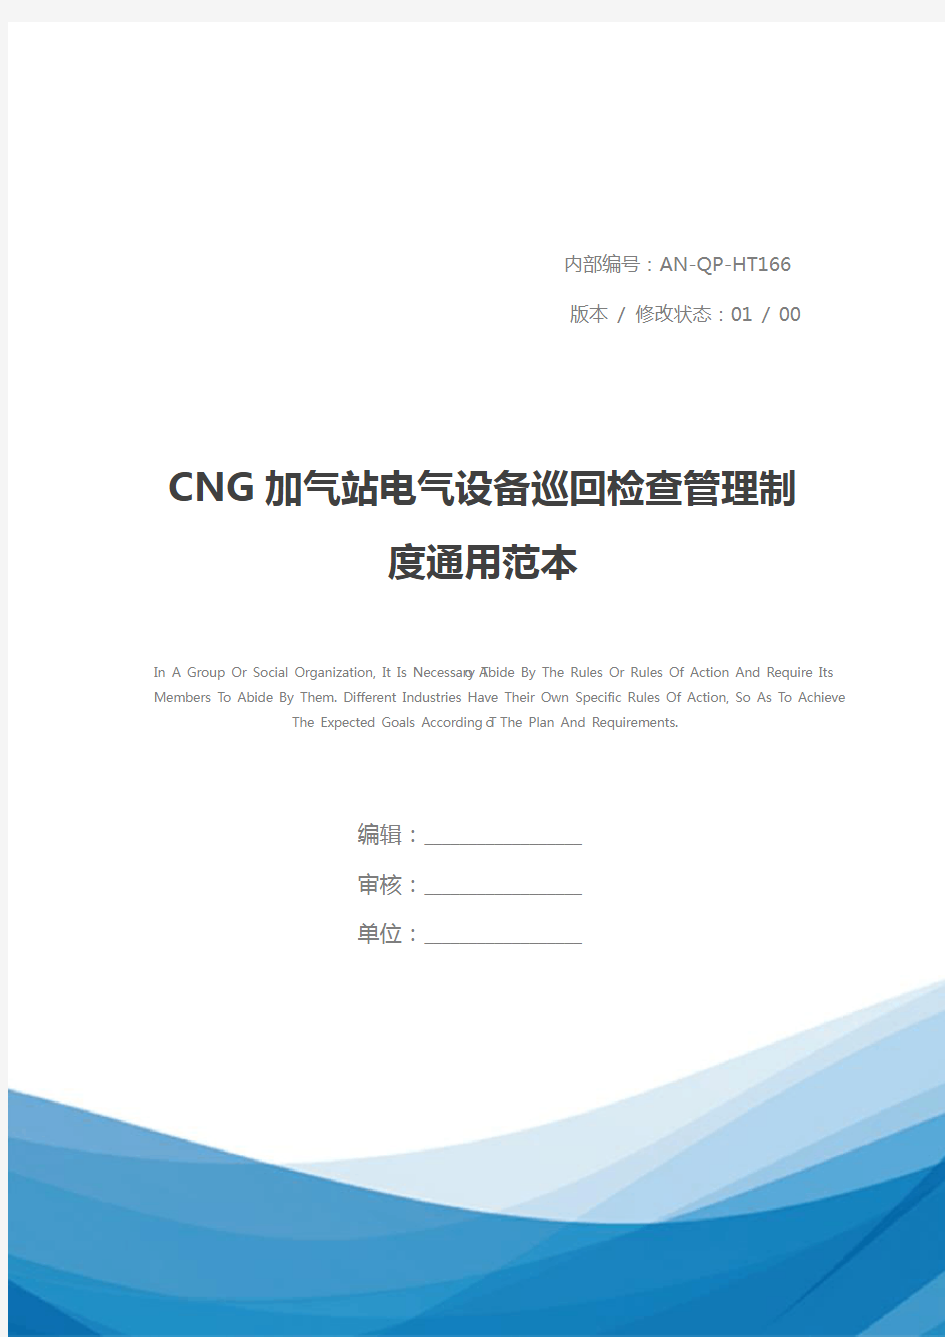 CNG加气站电气设备巡回检查管理制度通用范本